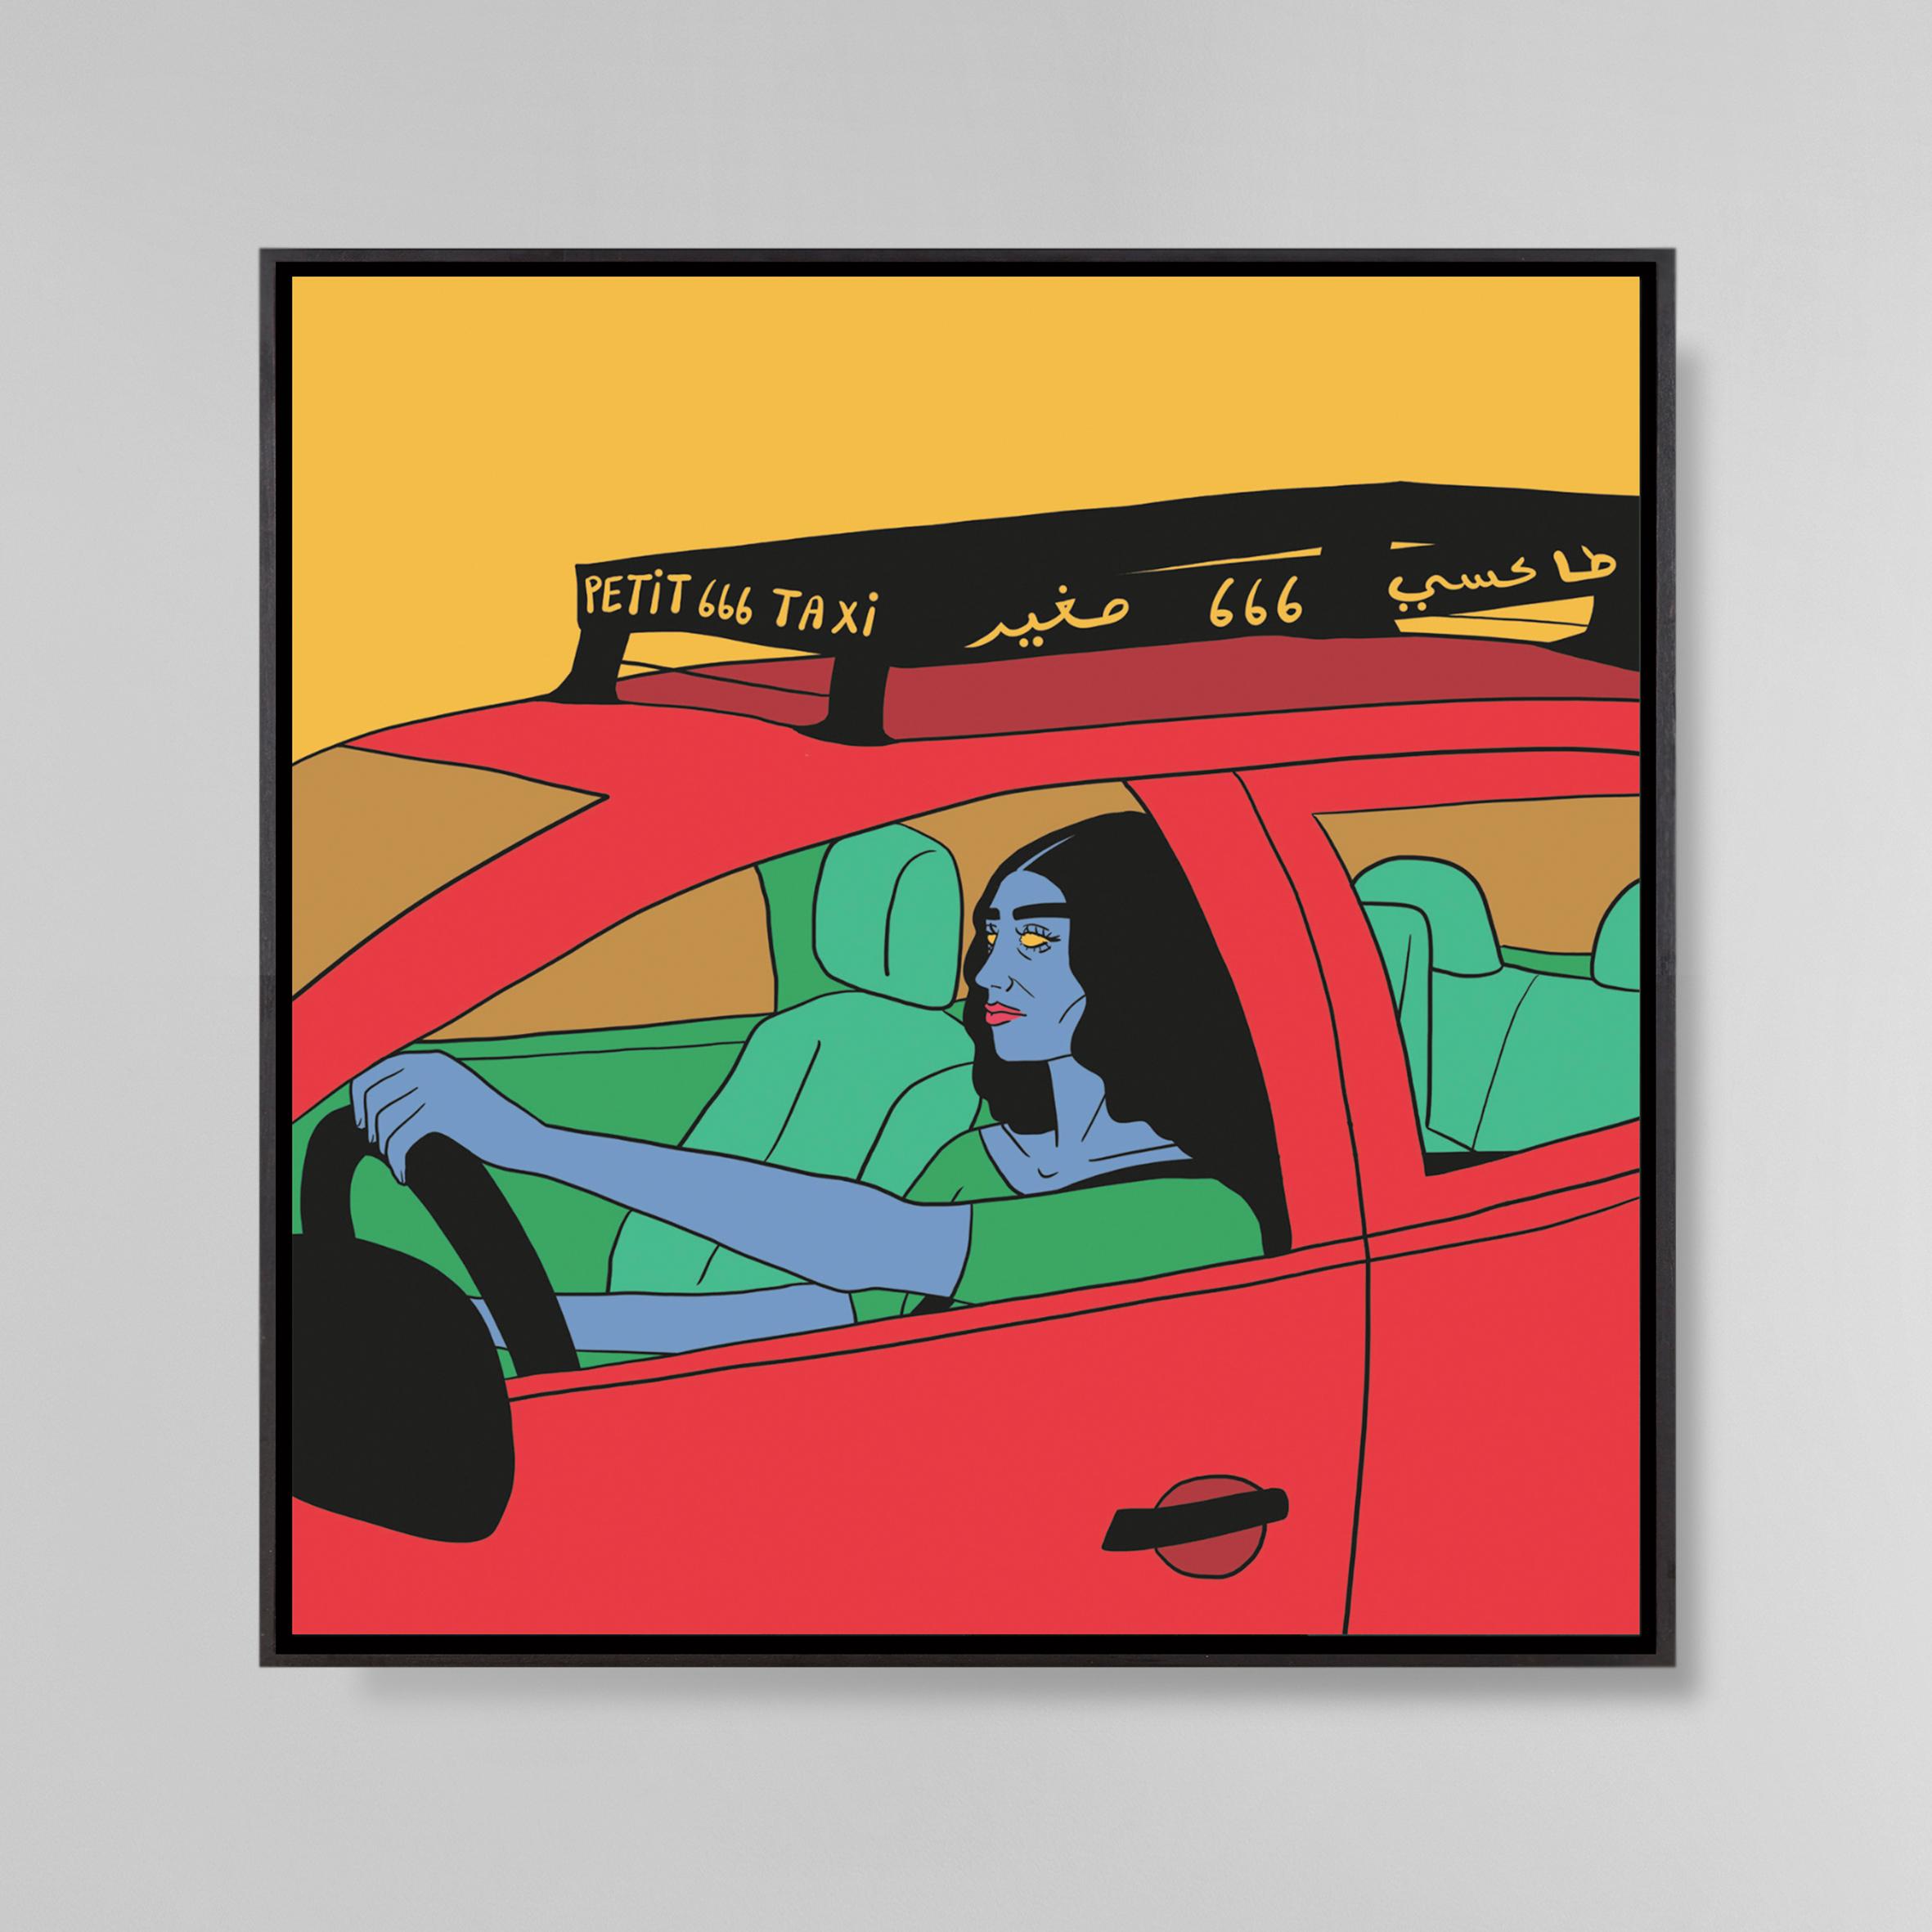 Femme et son taxi
Dessin digital sur toile
100 x 100 cm